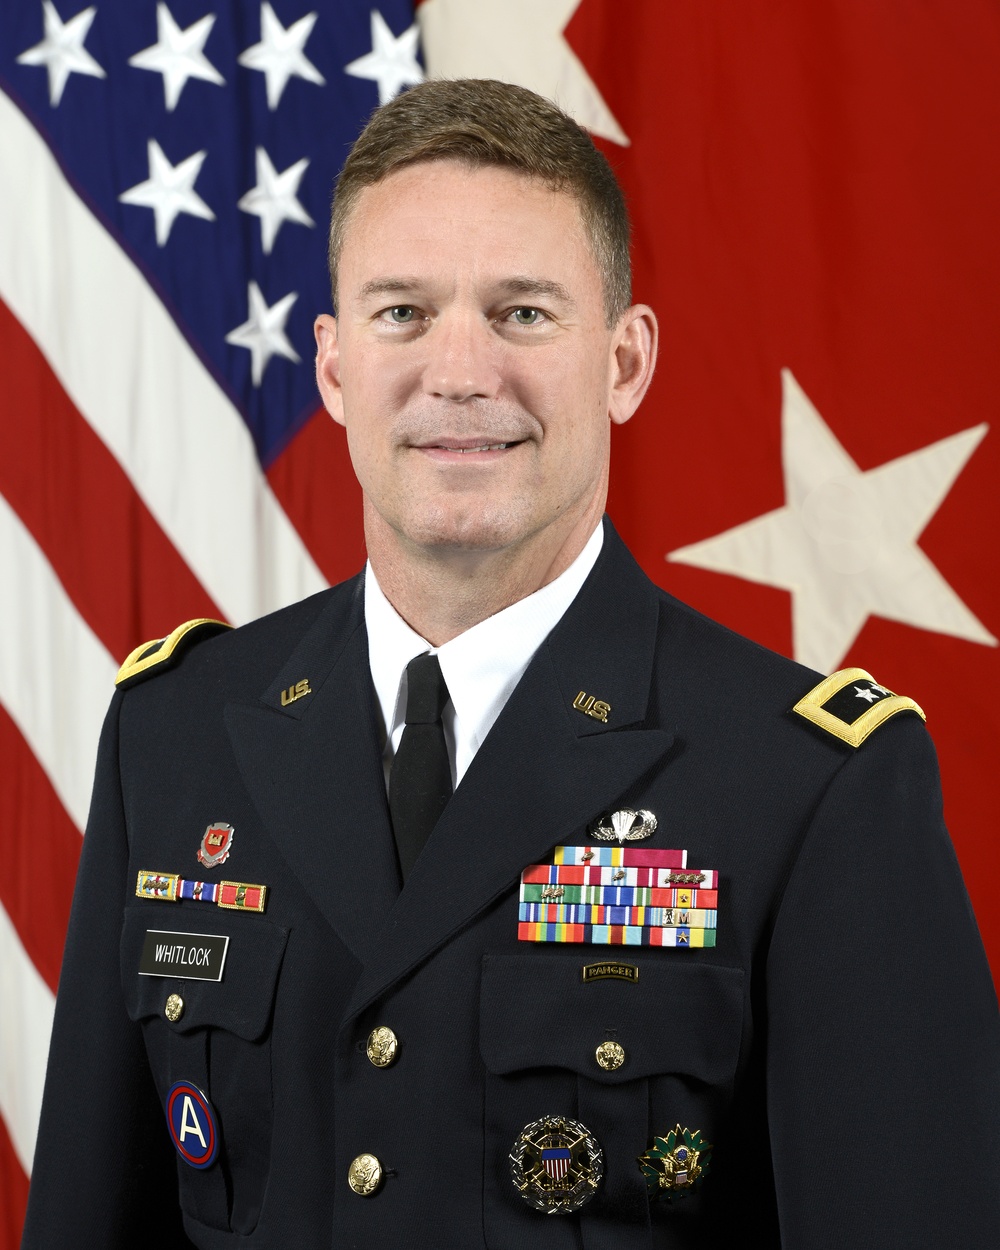 Maj. Gen. Joseph E. Whitlock